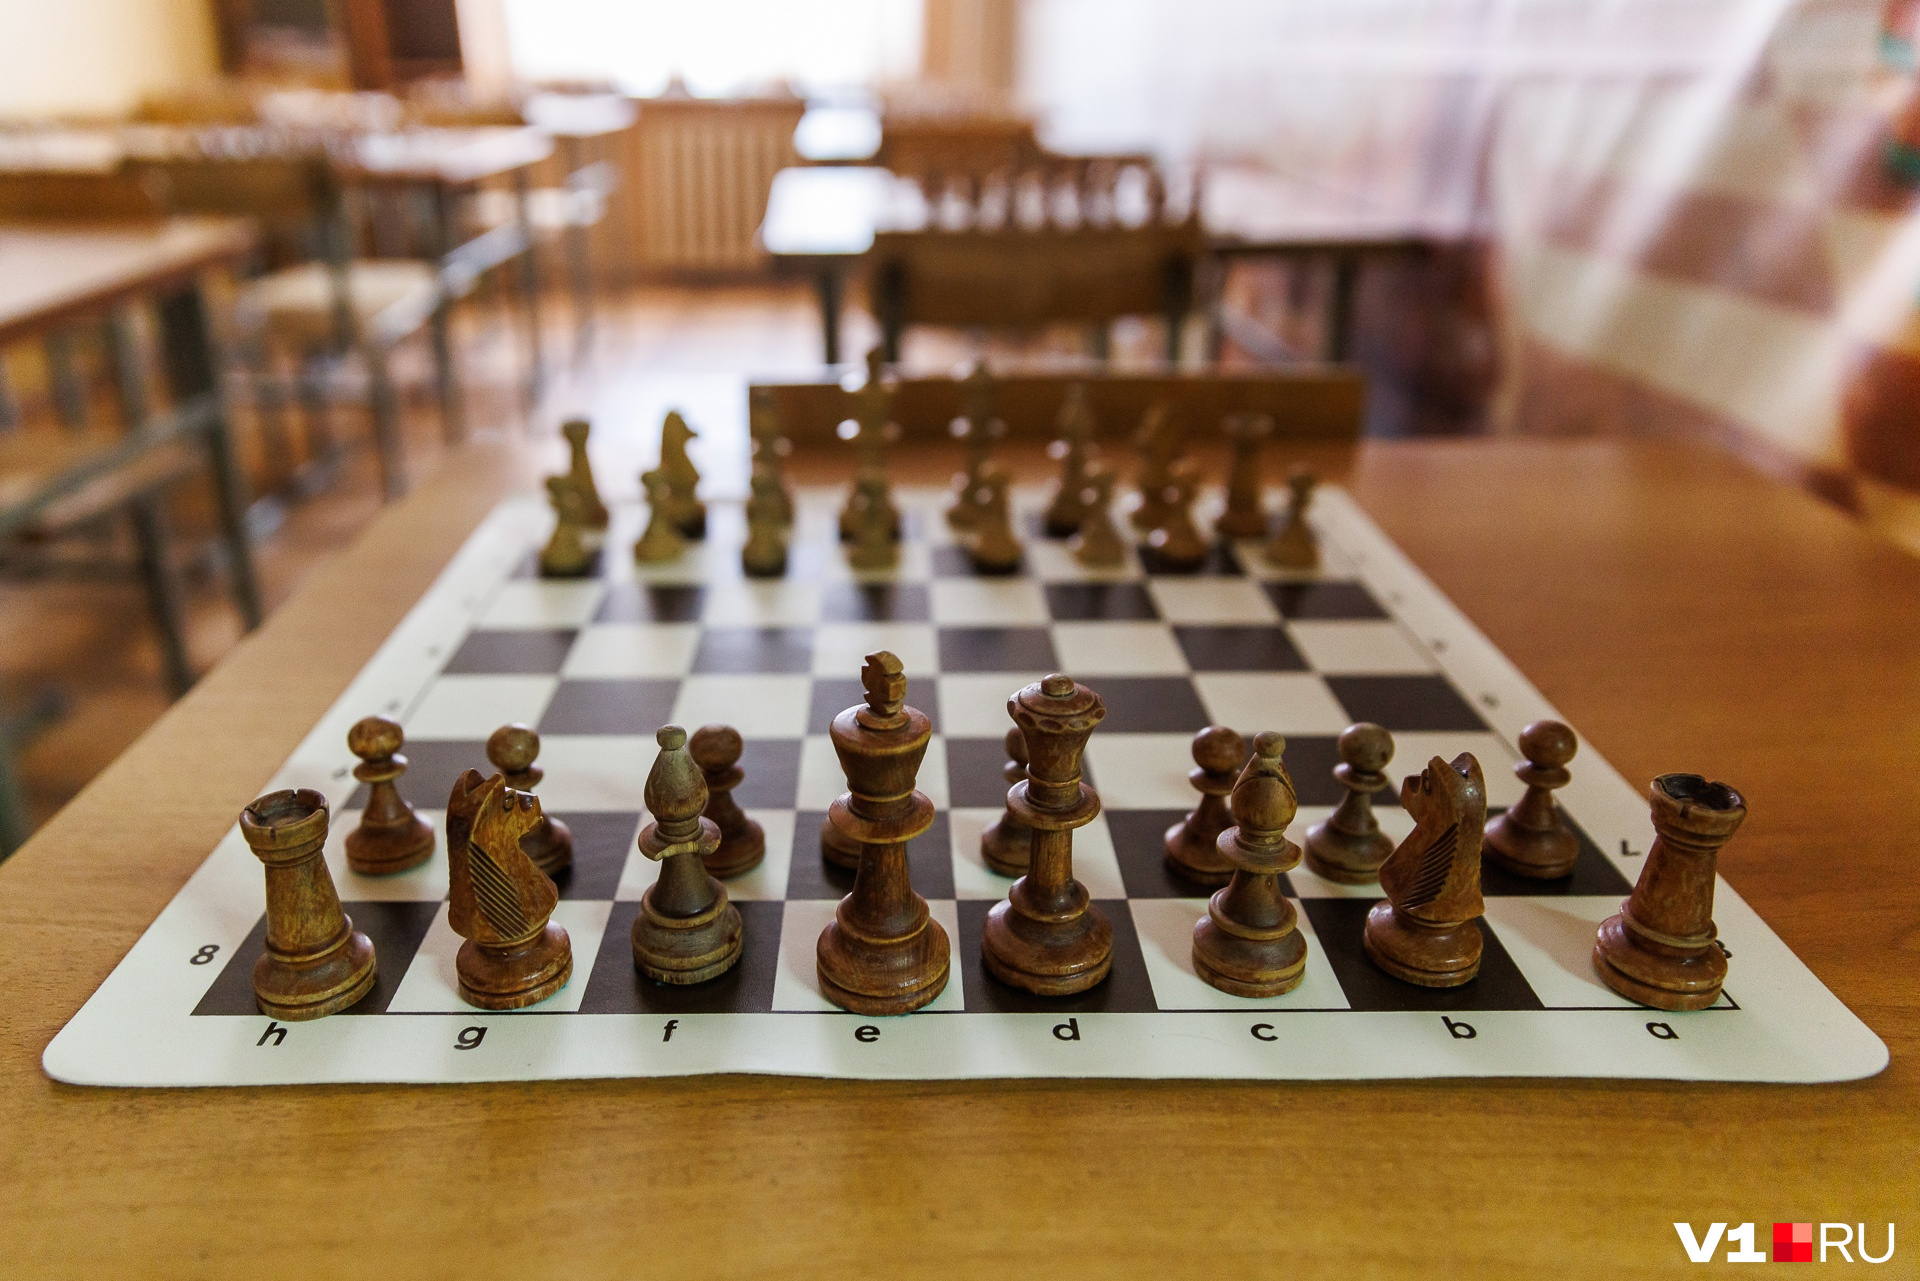 Шахматы учат логически мыслить и самостоятельно принимать решения